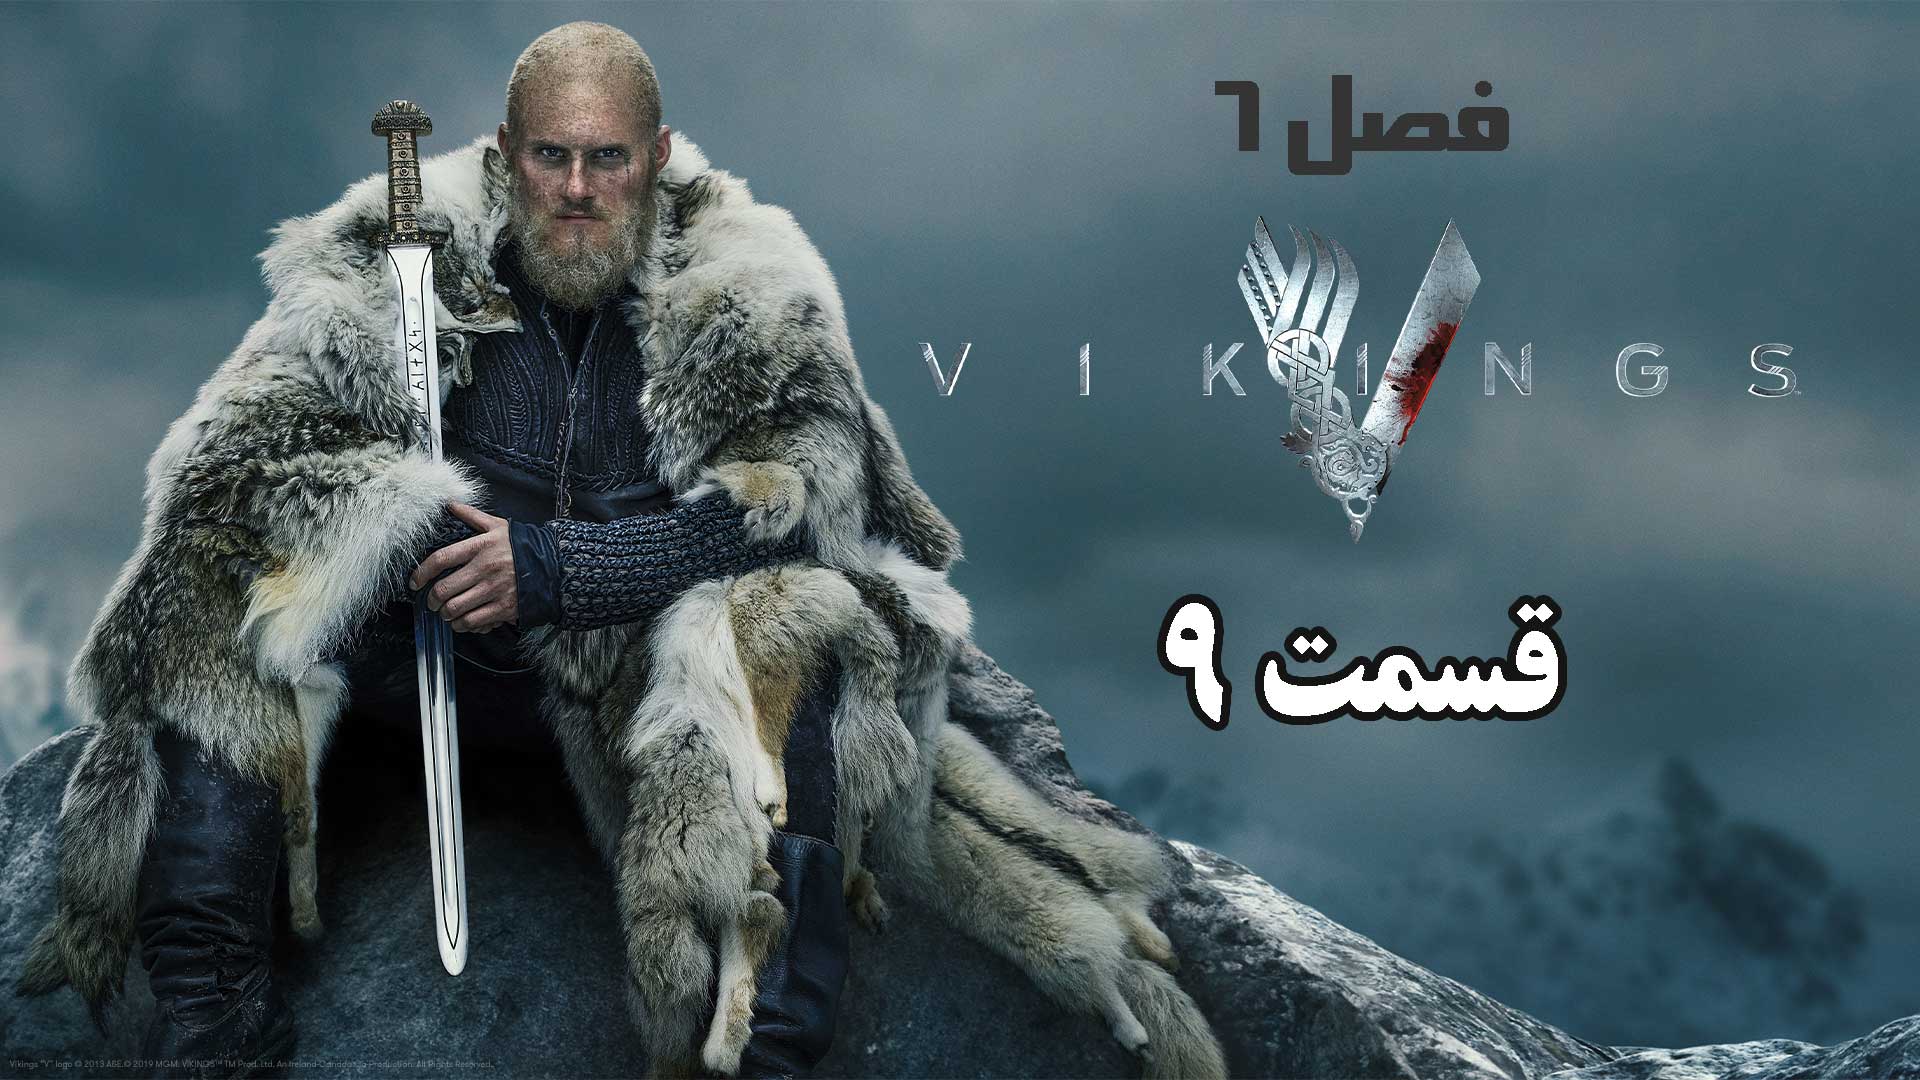 سریال وایکینگ ها (Vikings) فصل 6 قسمت 9 دوبله فارسی